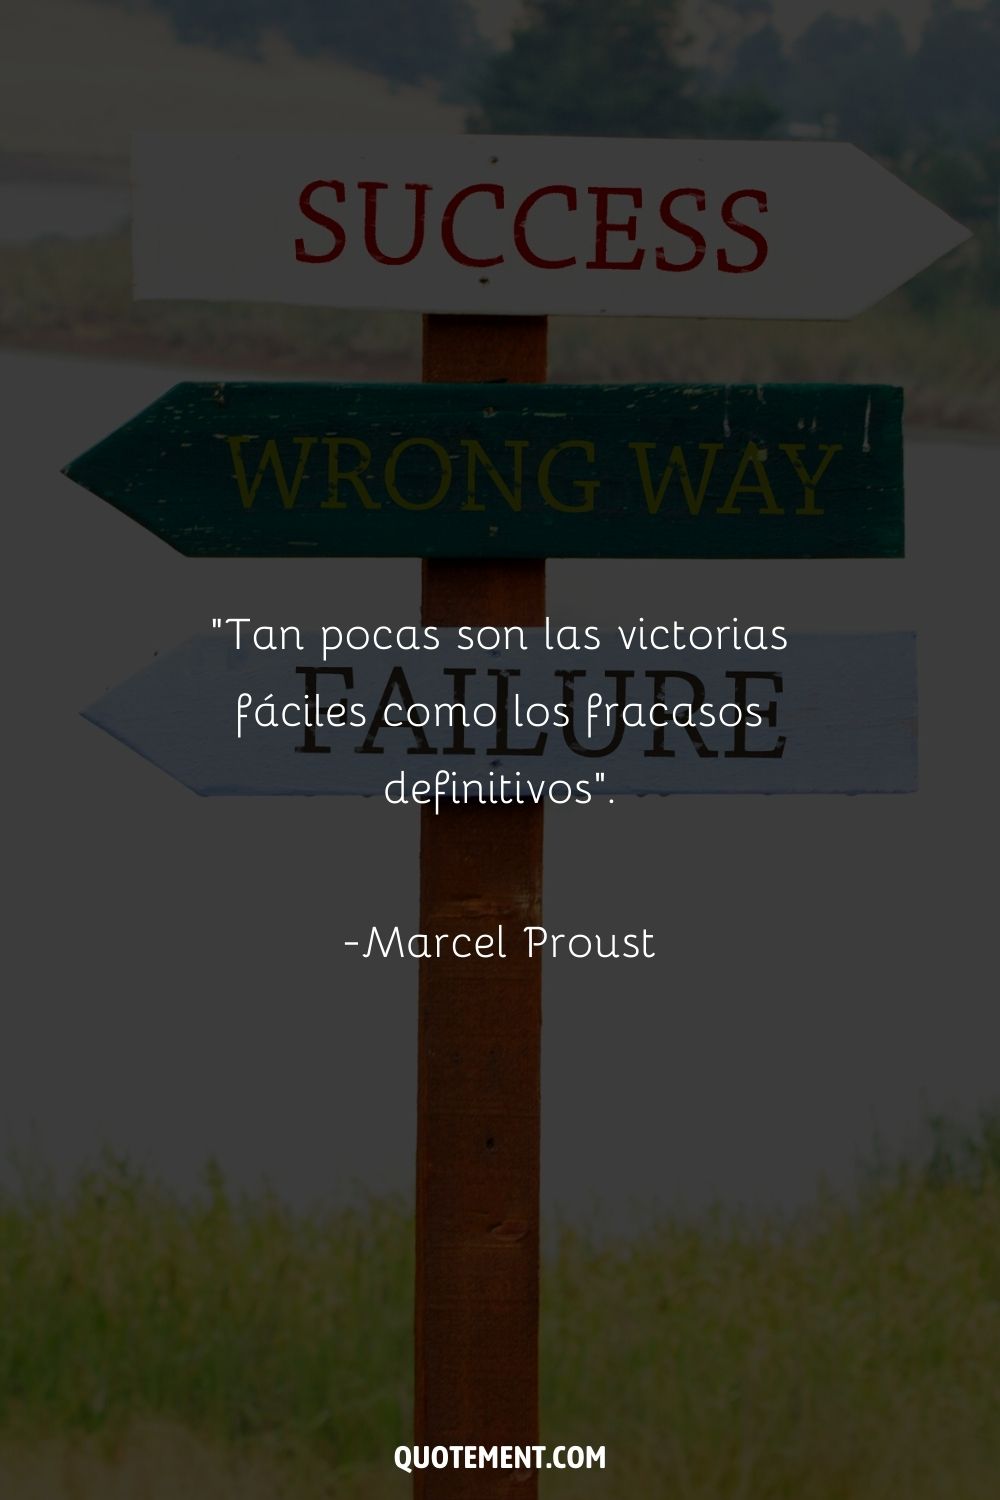 "Tan pocas son las victorias fáciles como los fracasos definitivos". - Marcel Proust